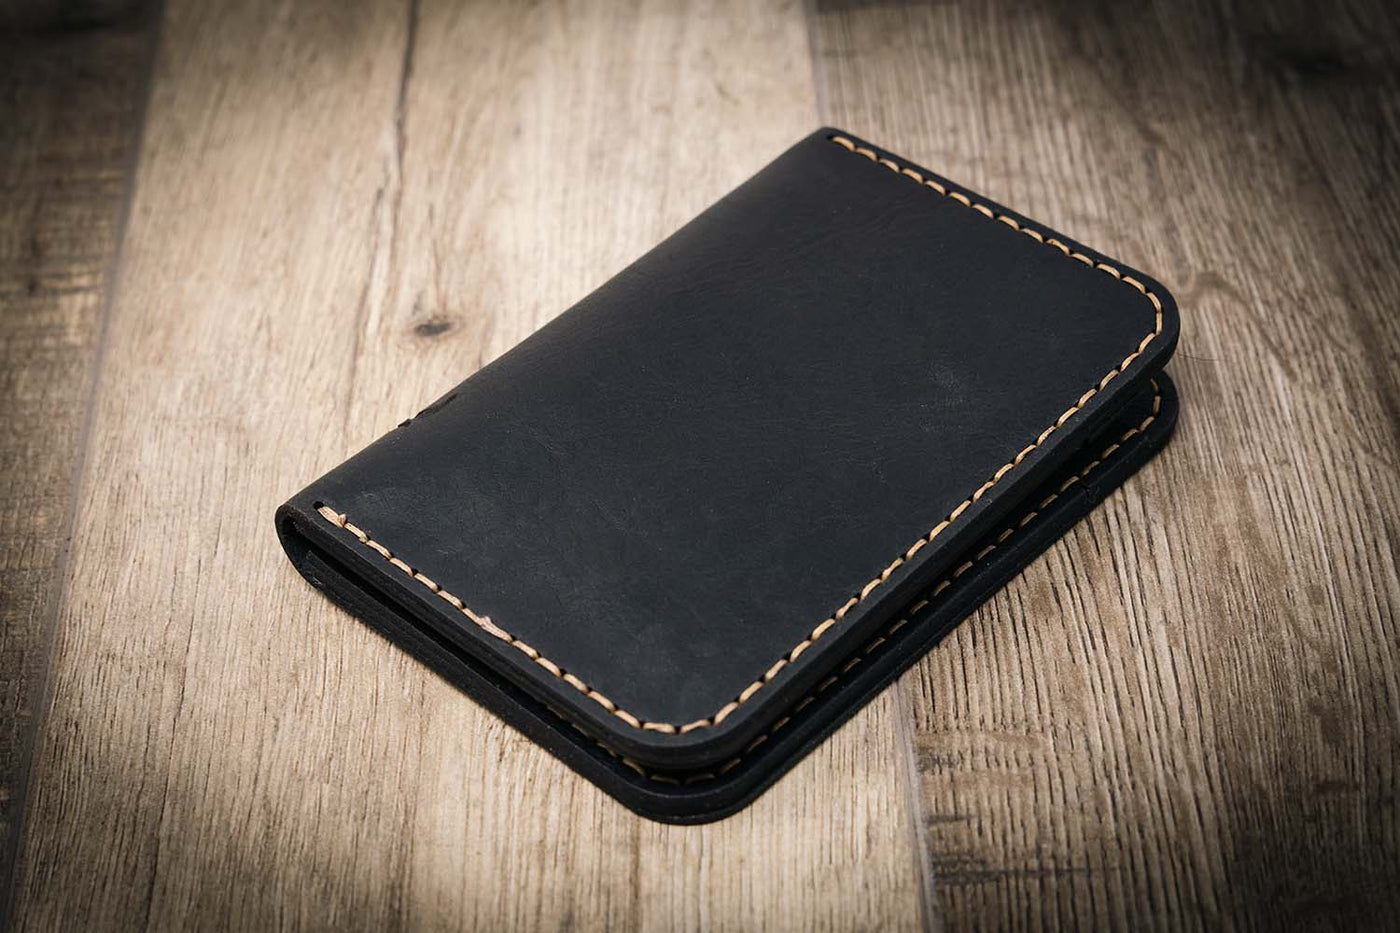 Slim leather wallet in black